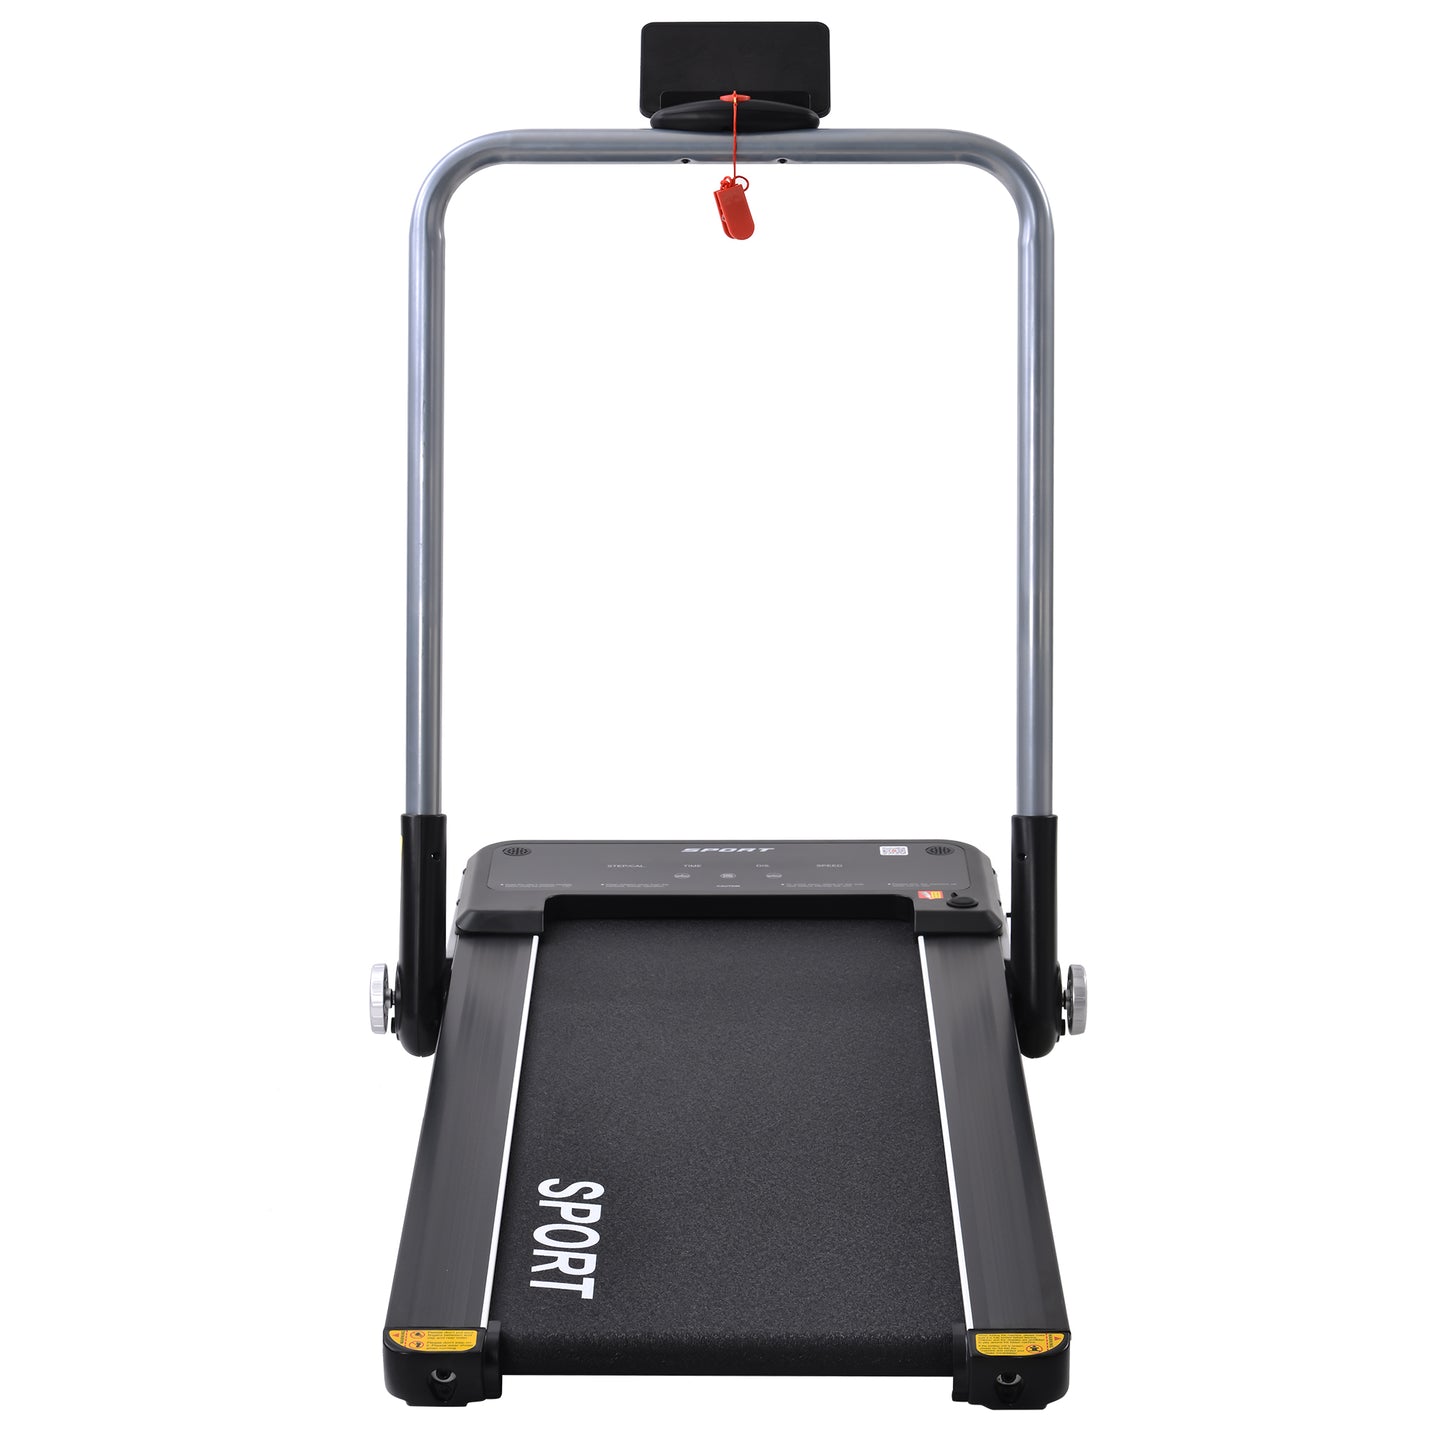 FoldFit Treadmill